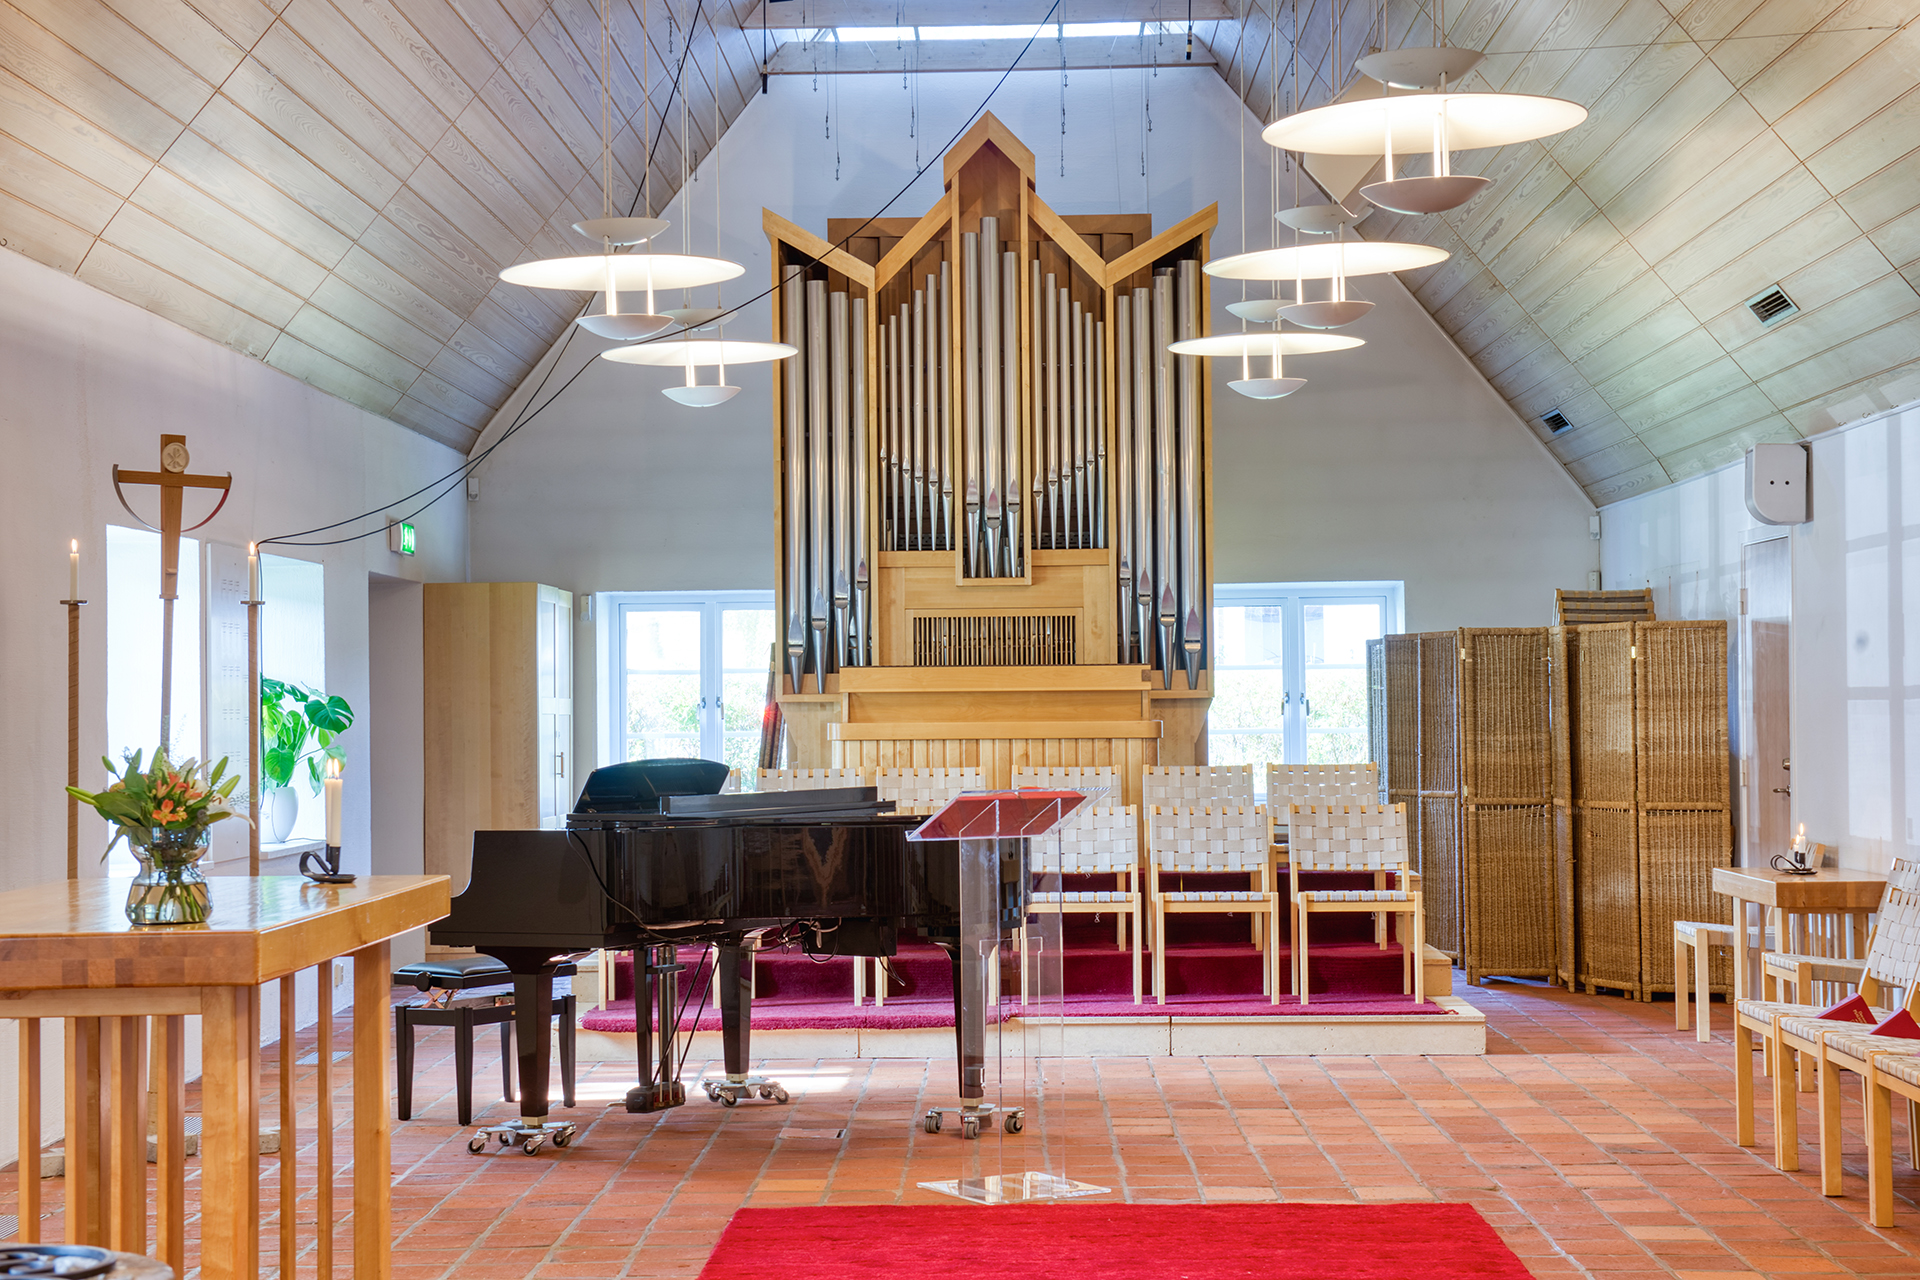 interiör från kyrkorum med flygel orgel i bakgrunden